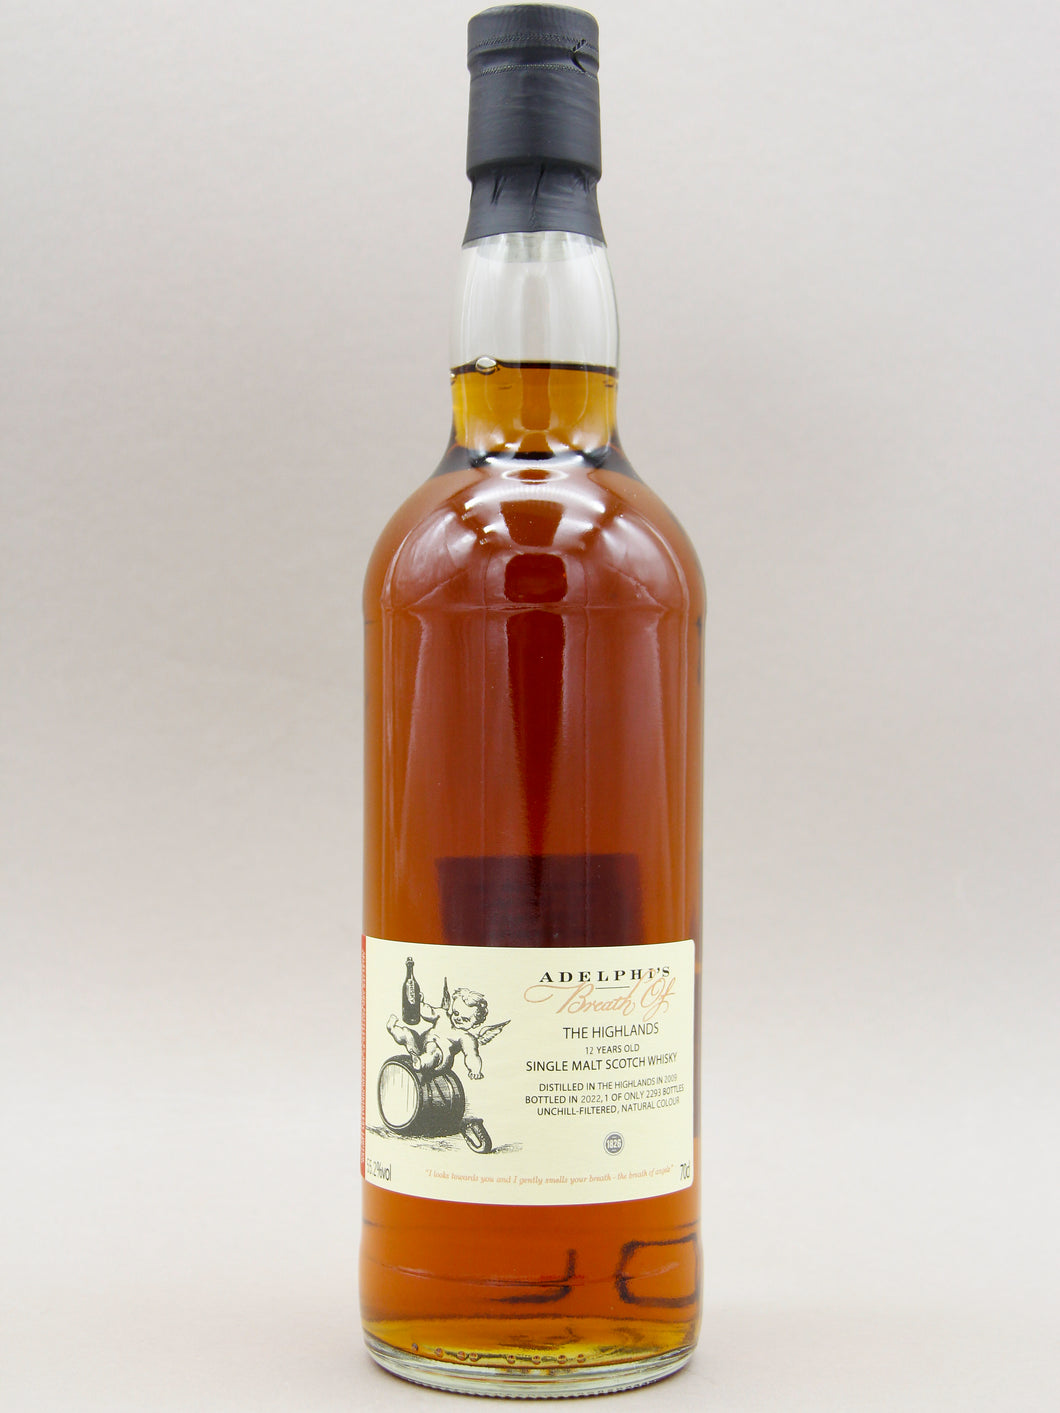 Breath of The Highlands, 2009-2022, Adelphi Selection, Single Malt Scotch Whisky (55.2%, 70cl)